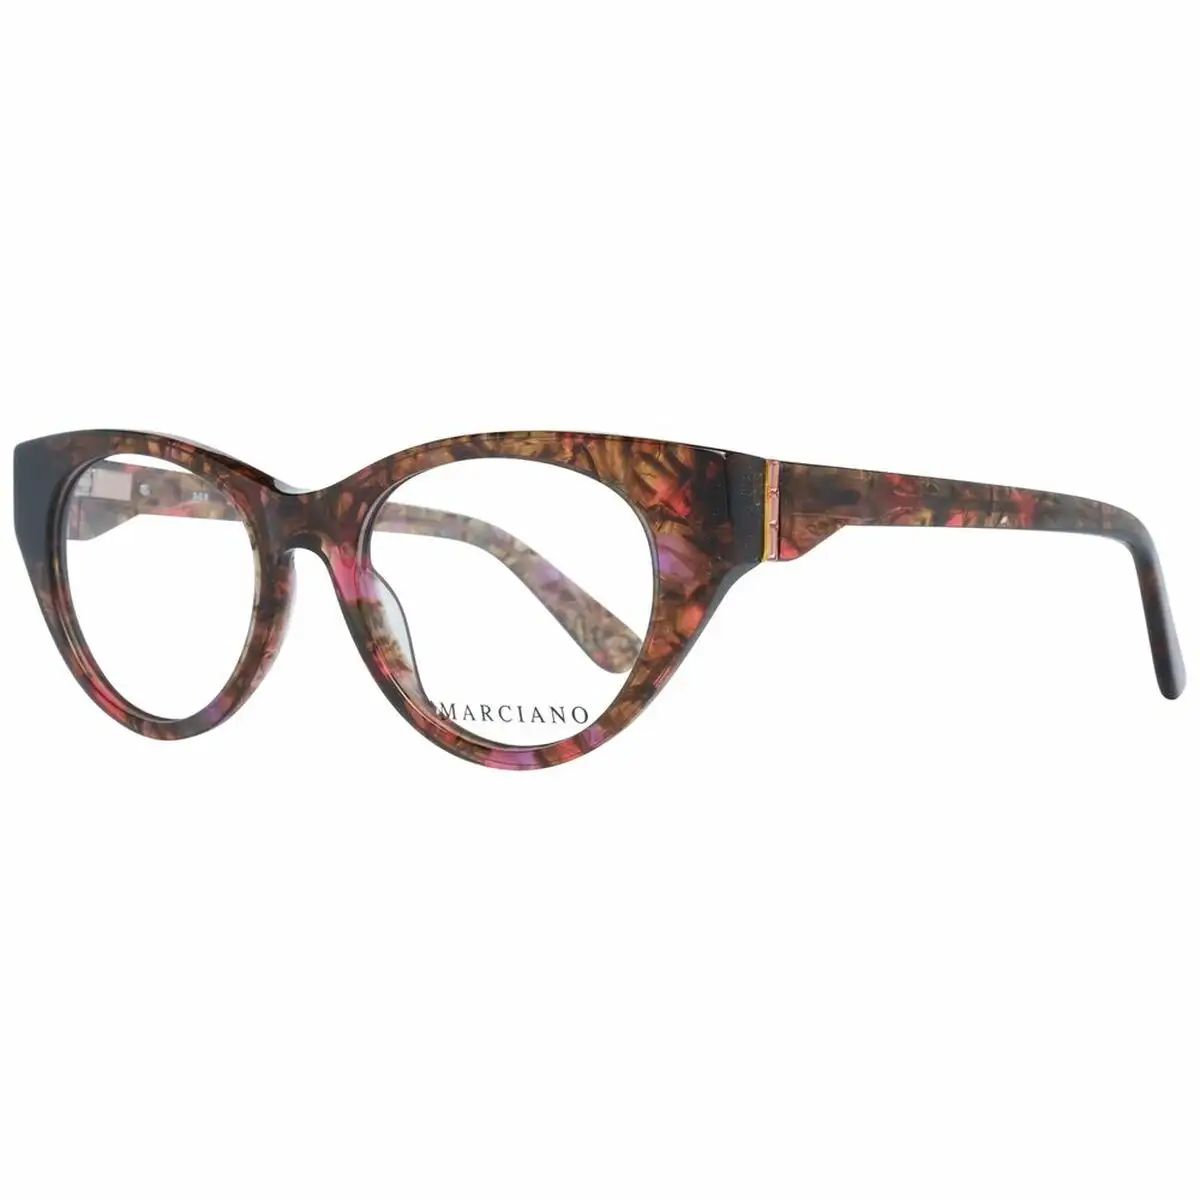 Monture de lunettes femme guess marciano gm0362 s 49074_2046. DIAYTAR SENEGAL - Votre Passage vers l'Éclat et la Beauté. Explorez notre boutique en ligne et trouvez des produits qui subliment votre apparence et votre espace.